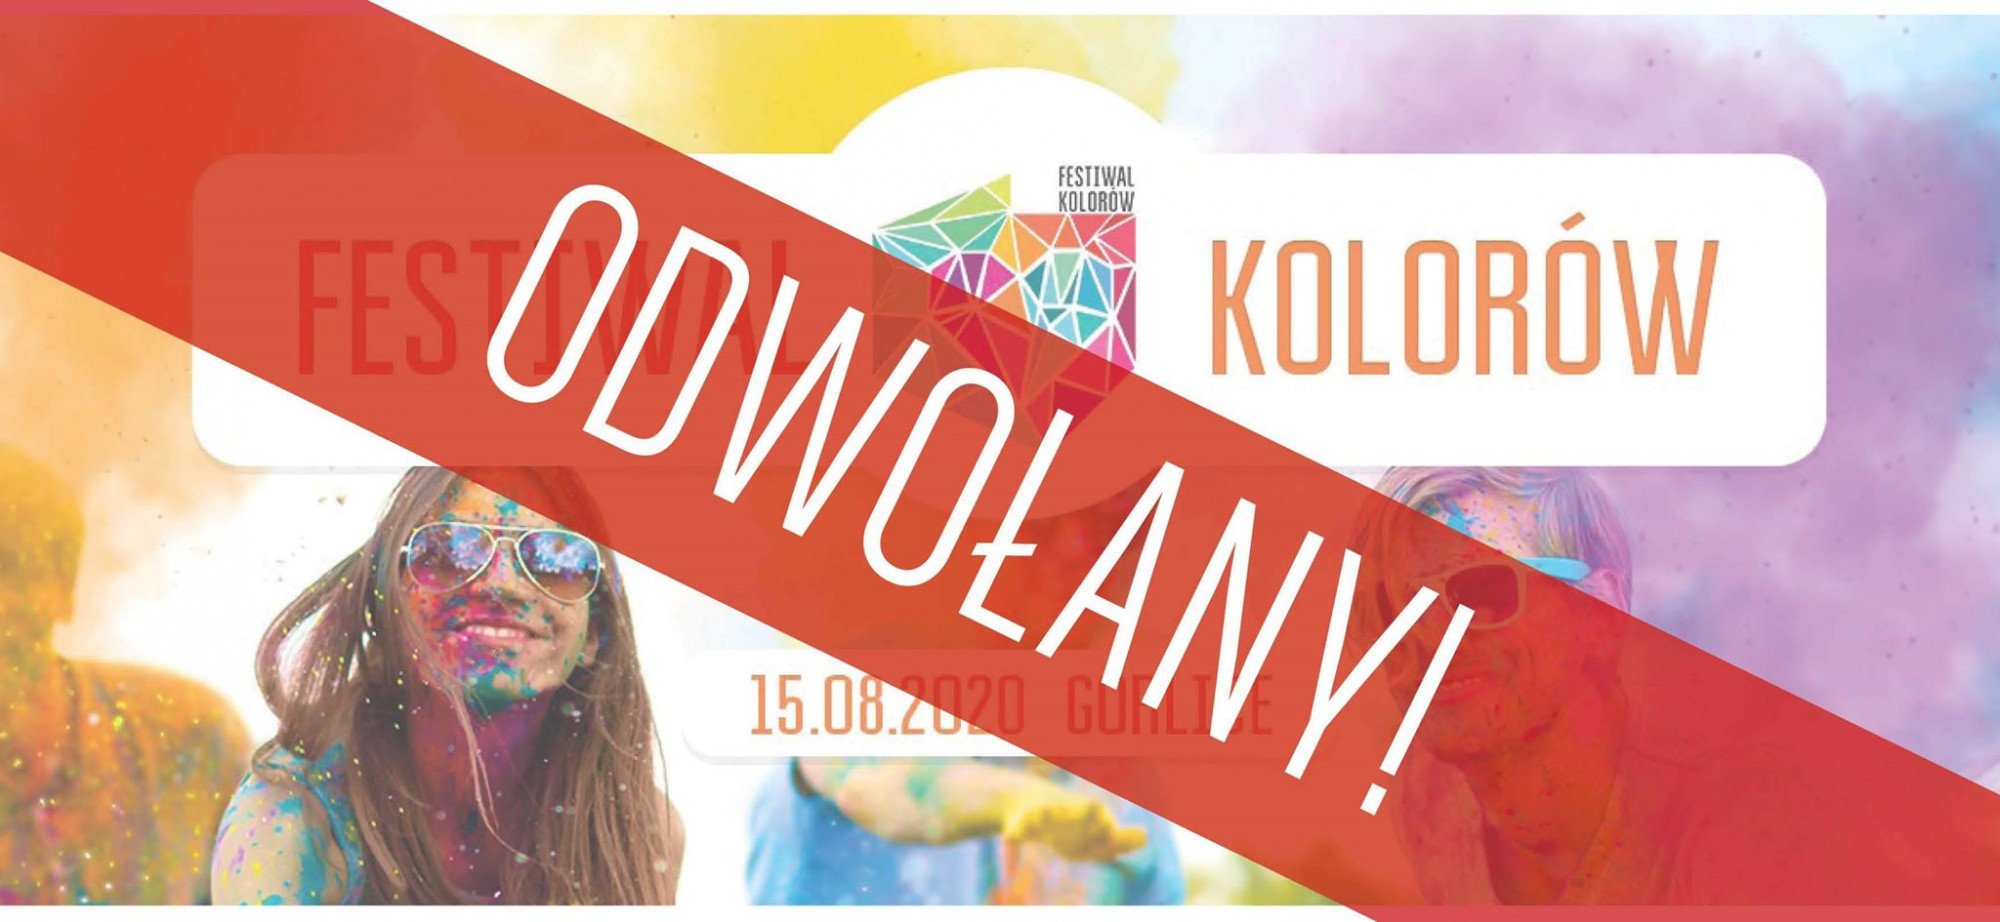 Festiwal Kolorów - wydarzenie odwołane